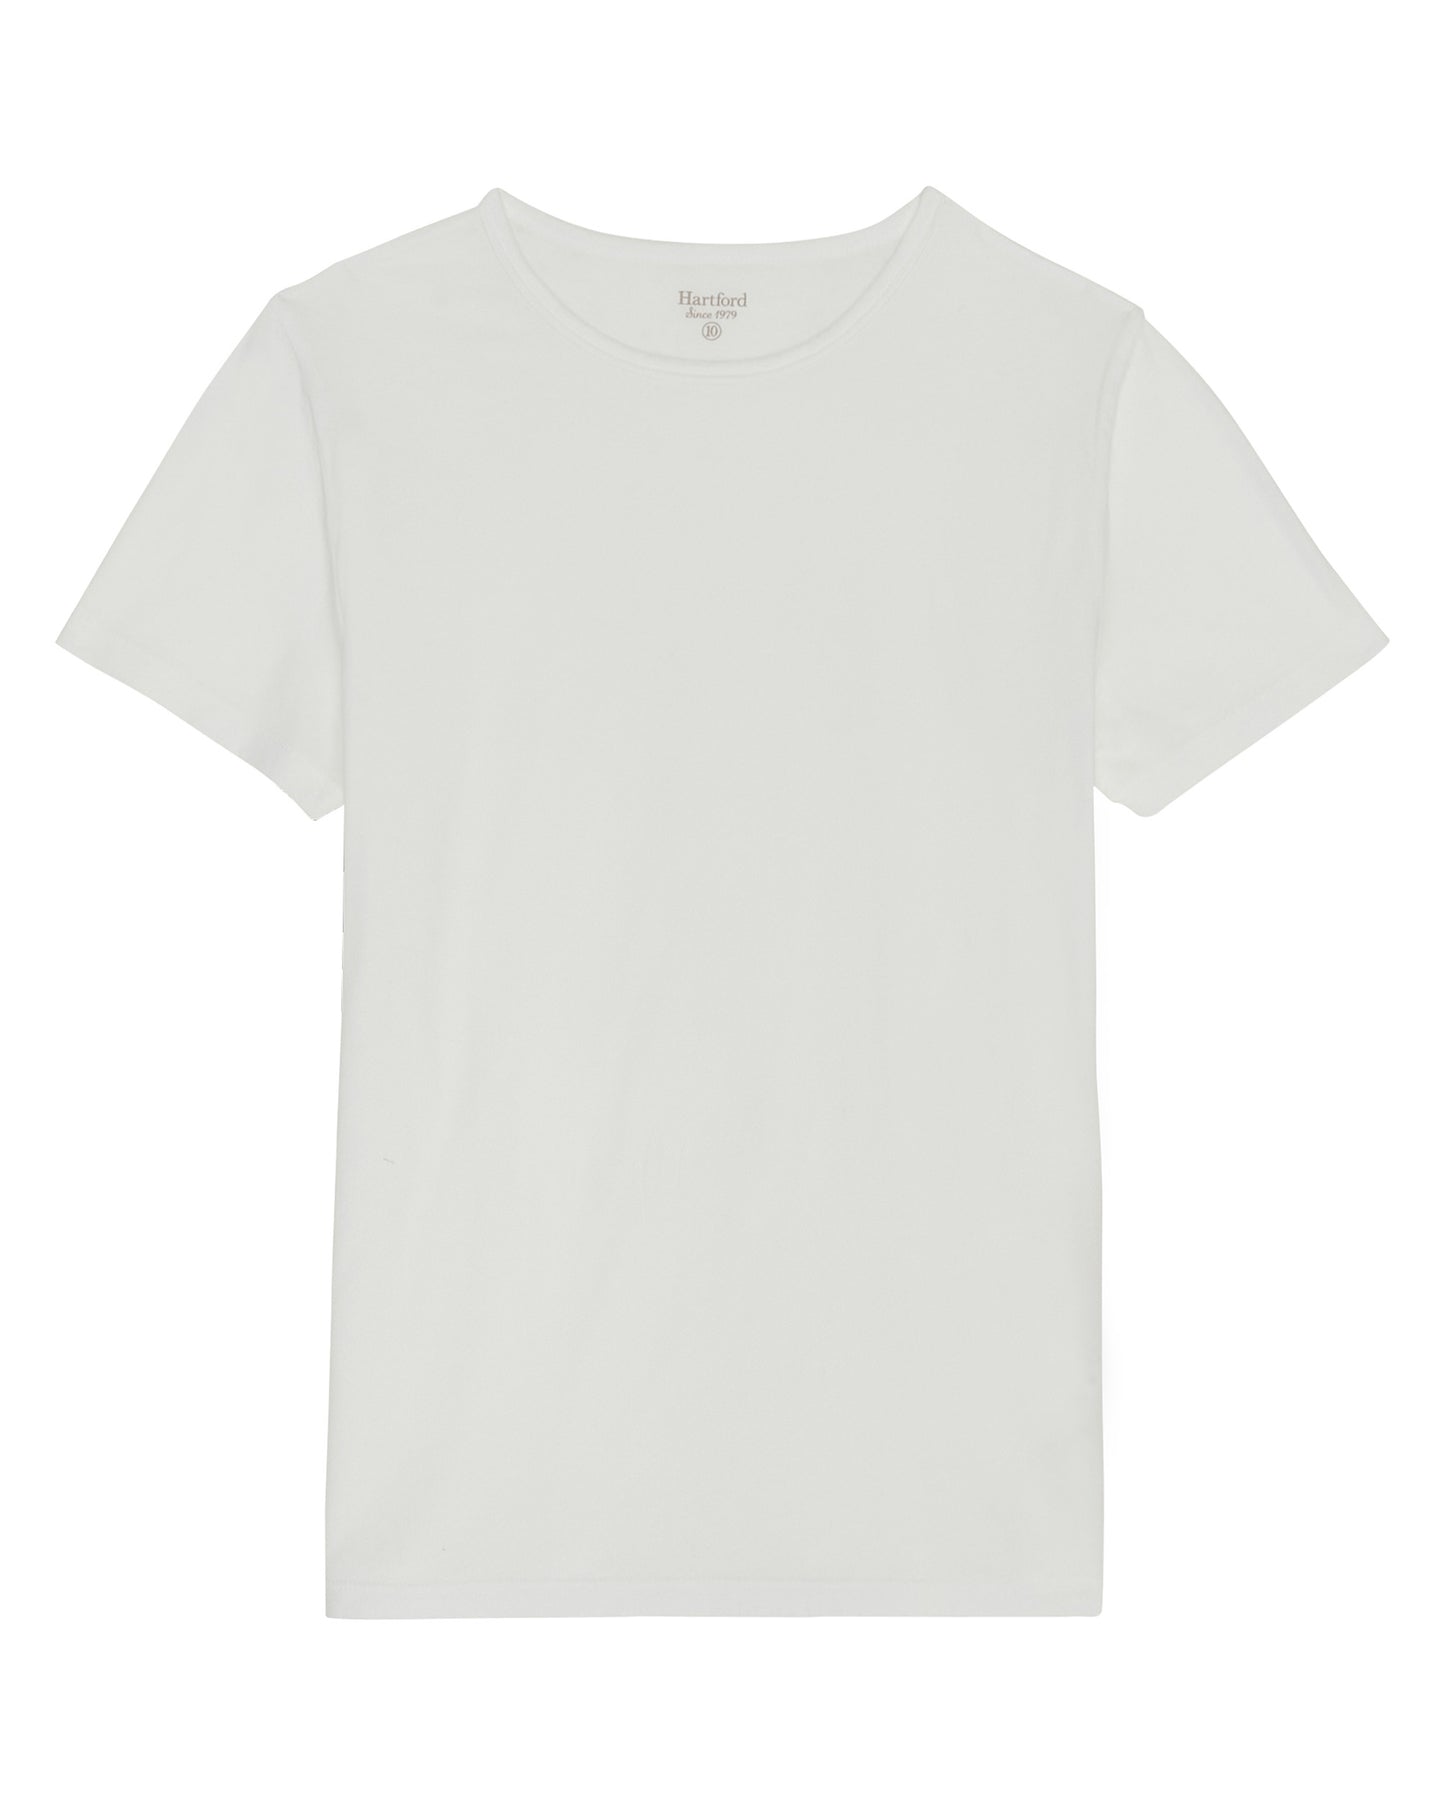 Tee Shirt Garçon en jersey léger Blanc